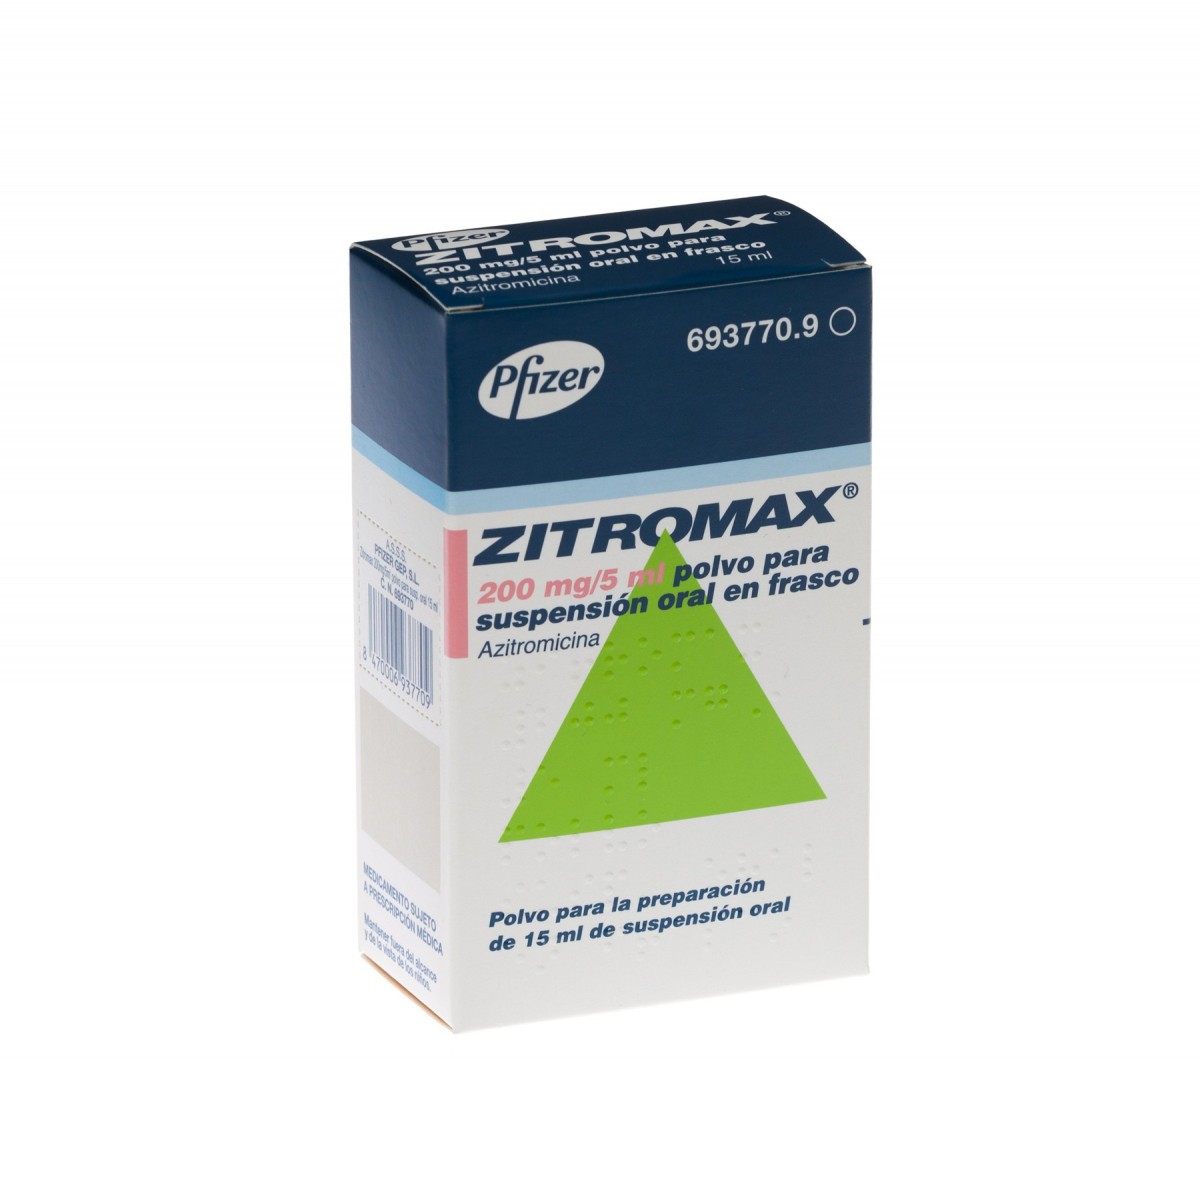 ZITROMAX 200 mg/5 ml POLVO PARA SUSPENSION ORAL EN FRASCO, 1 frasco de 15 ml fotografía del envase.